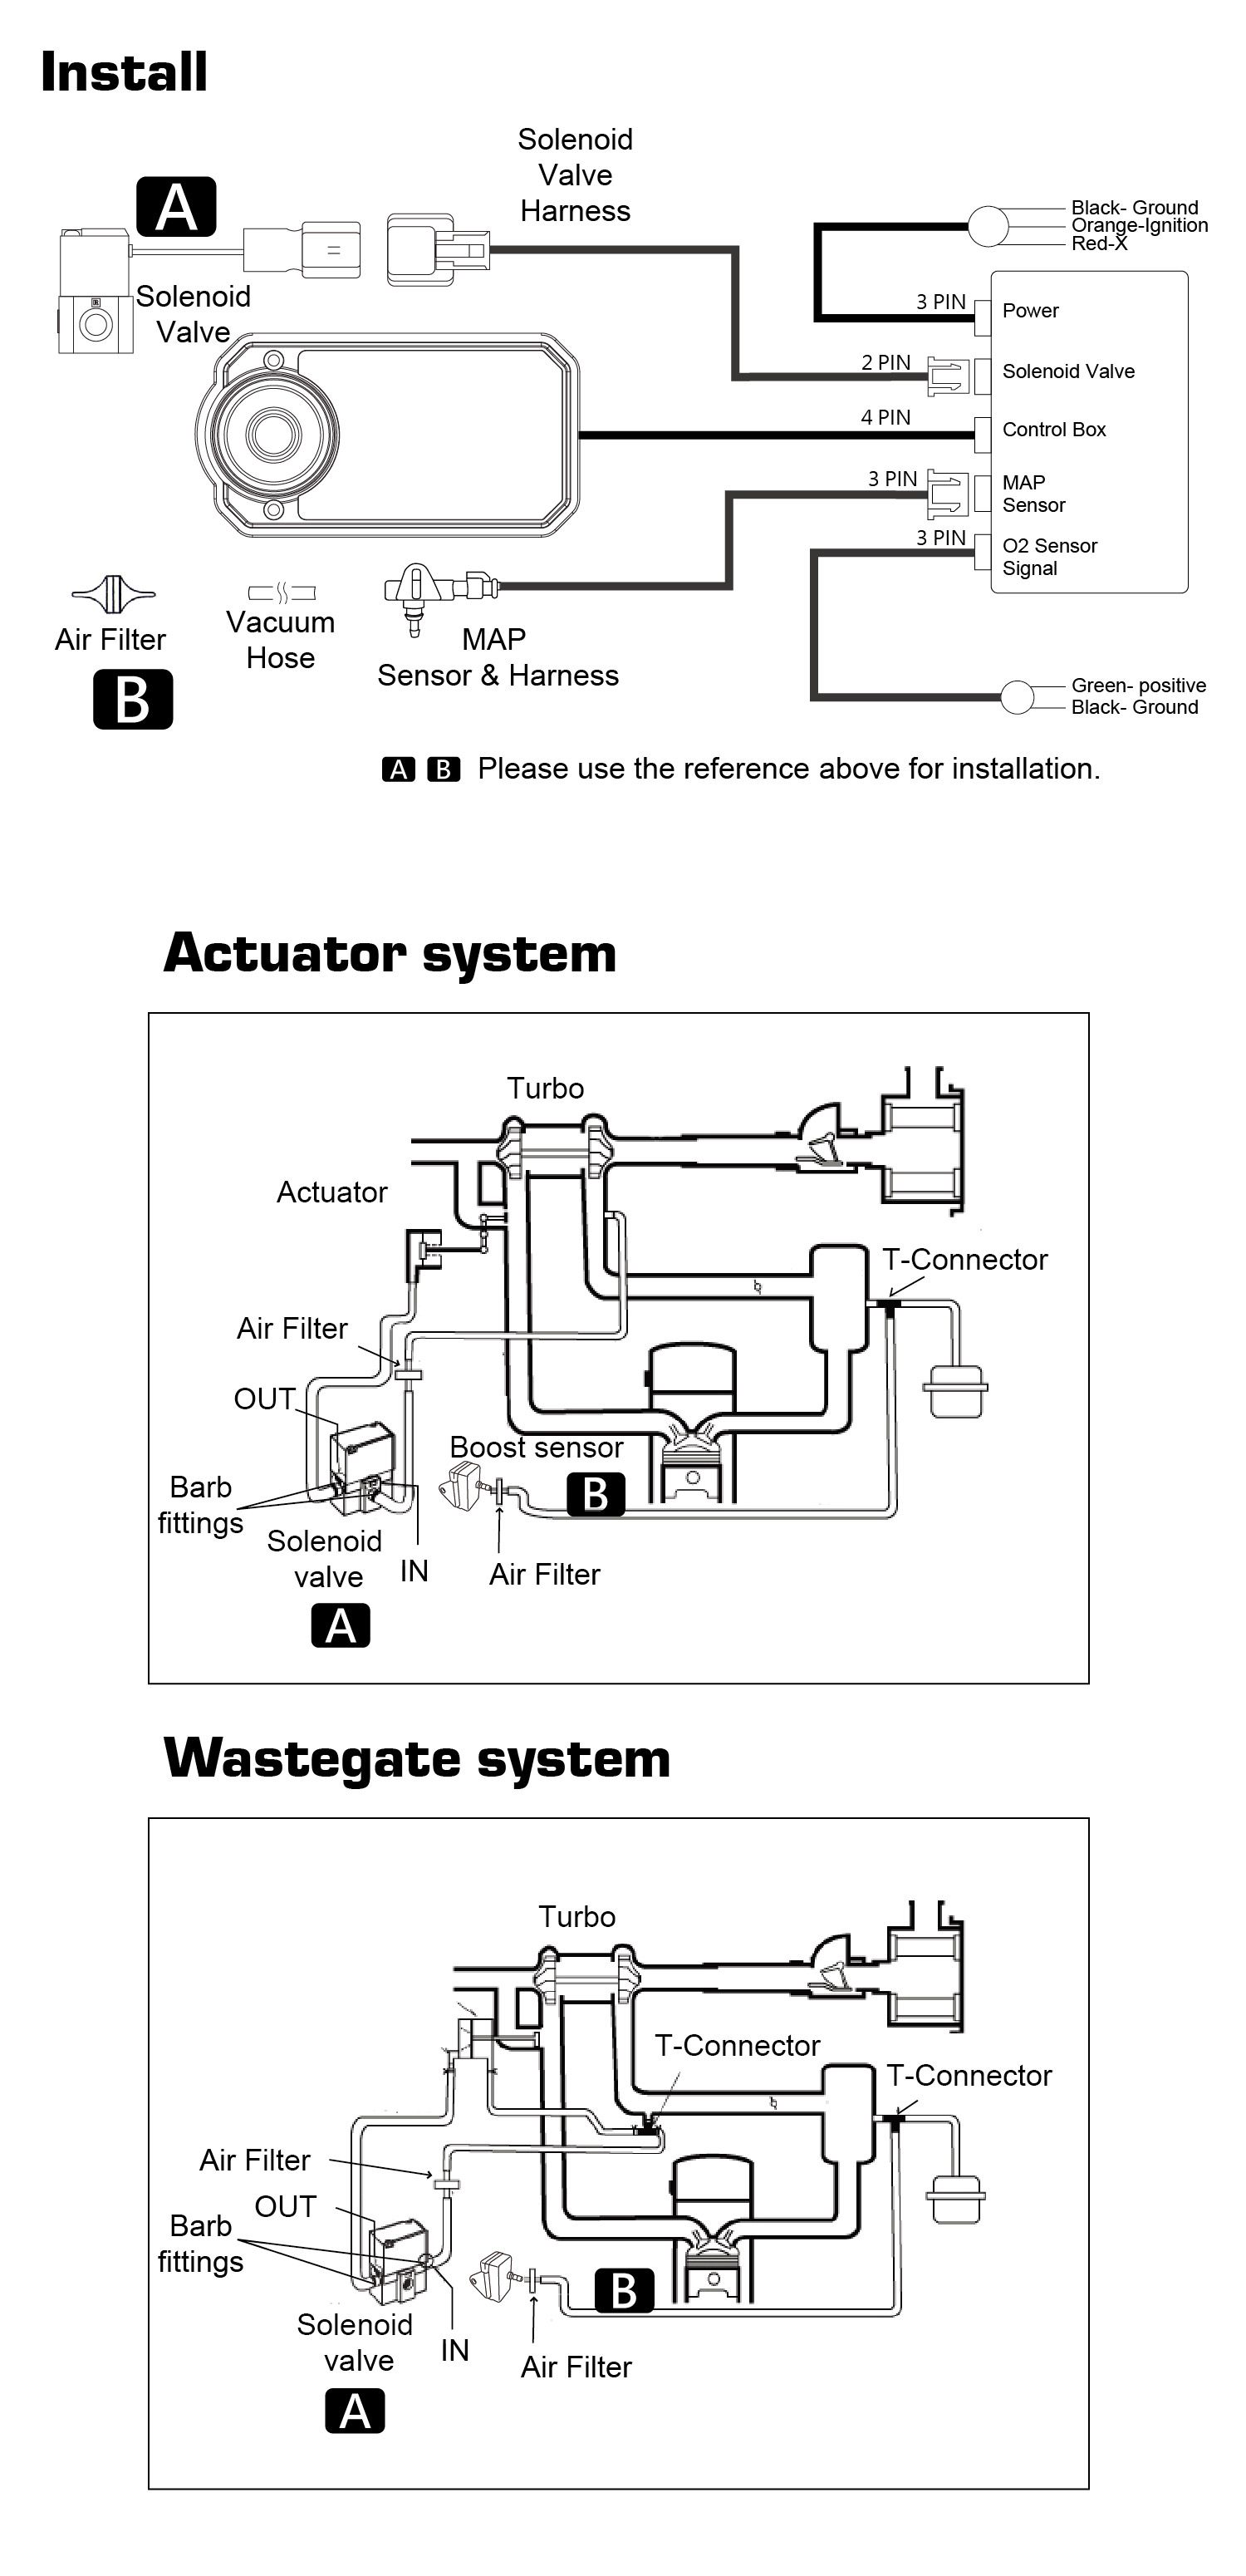 Podzielony na dwie systemy: Aktuator, Wastegate.